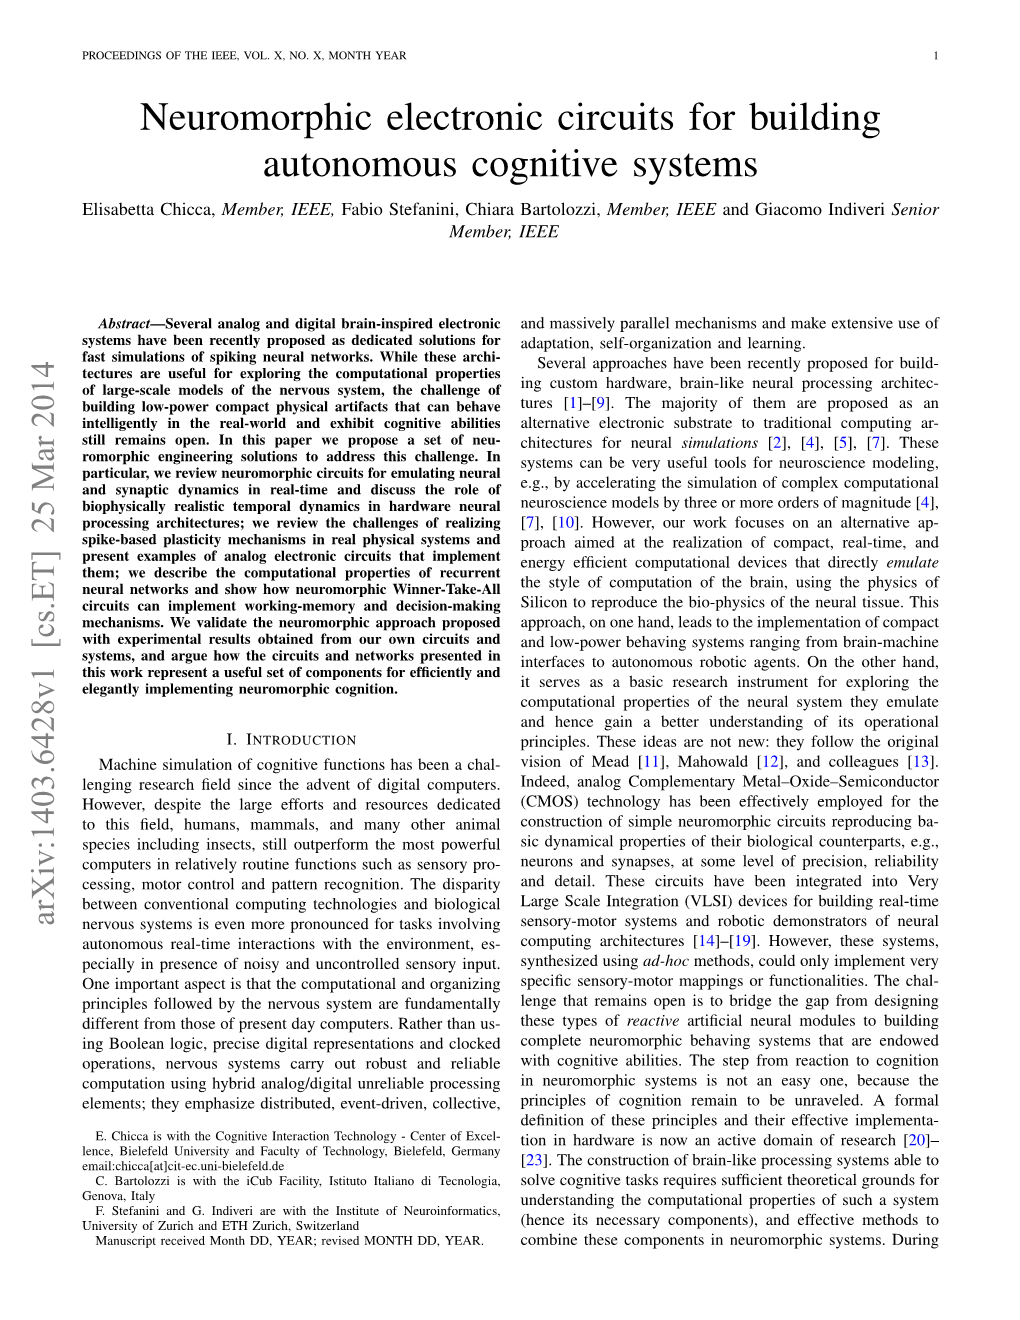 Neuromorphic Electronic Circuits for Building Autonomous